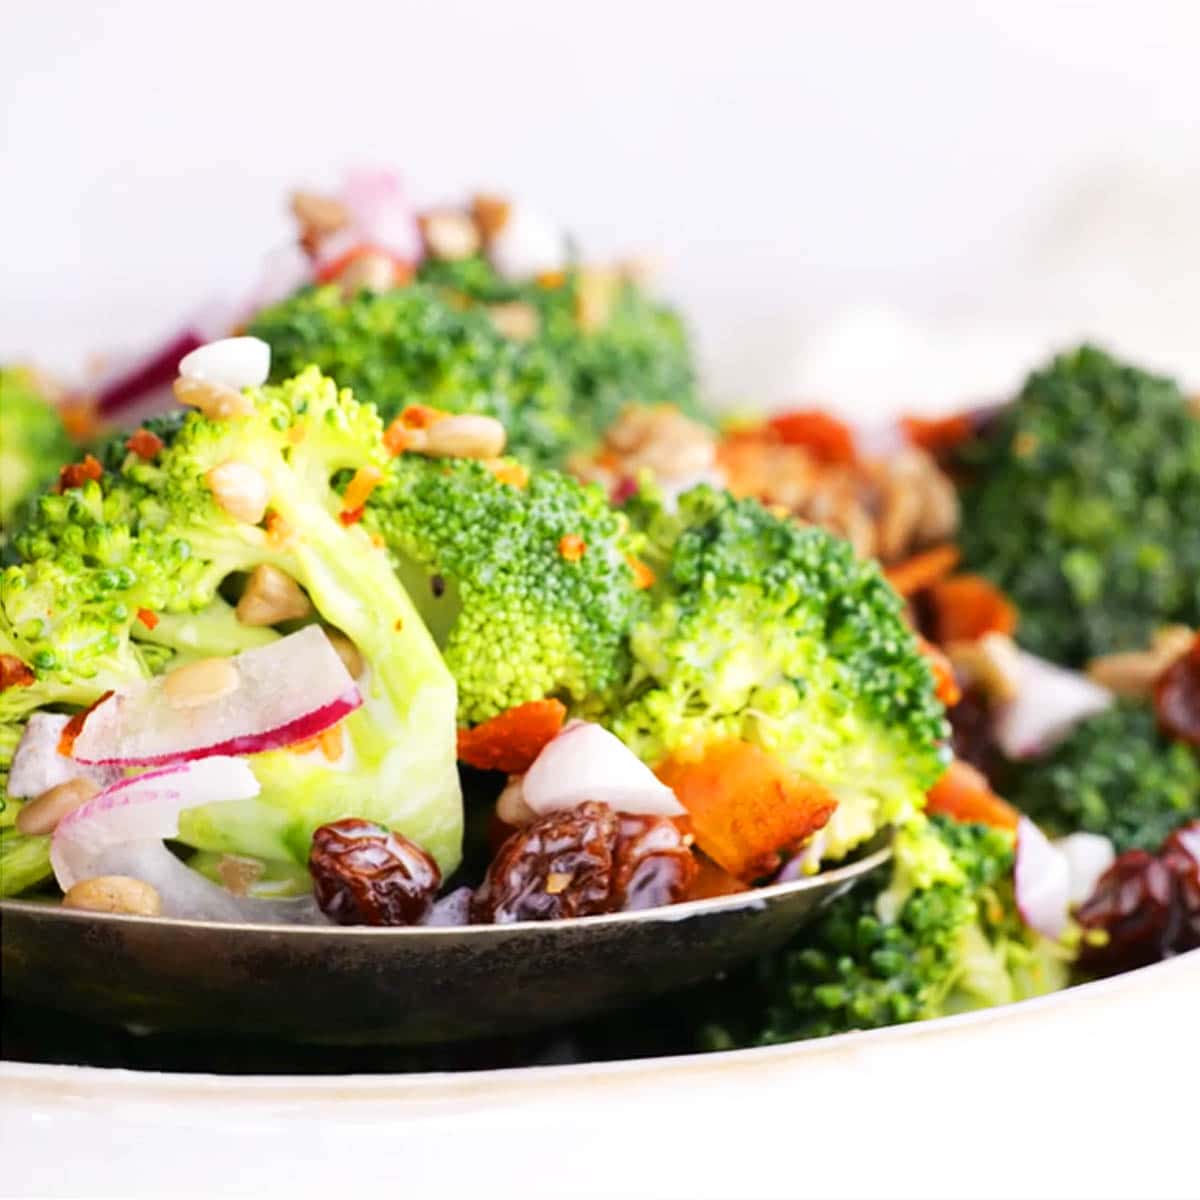 Bowl of broccoli salad.